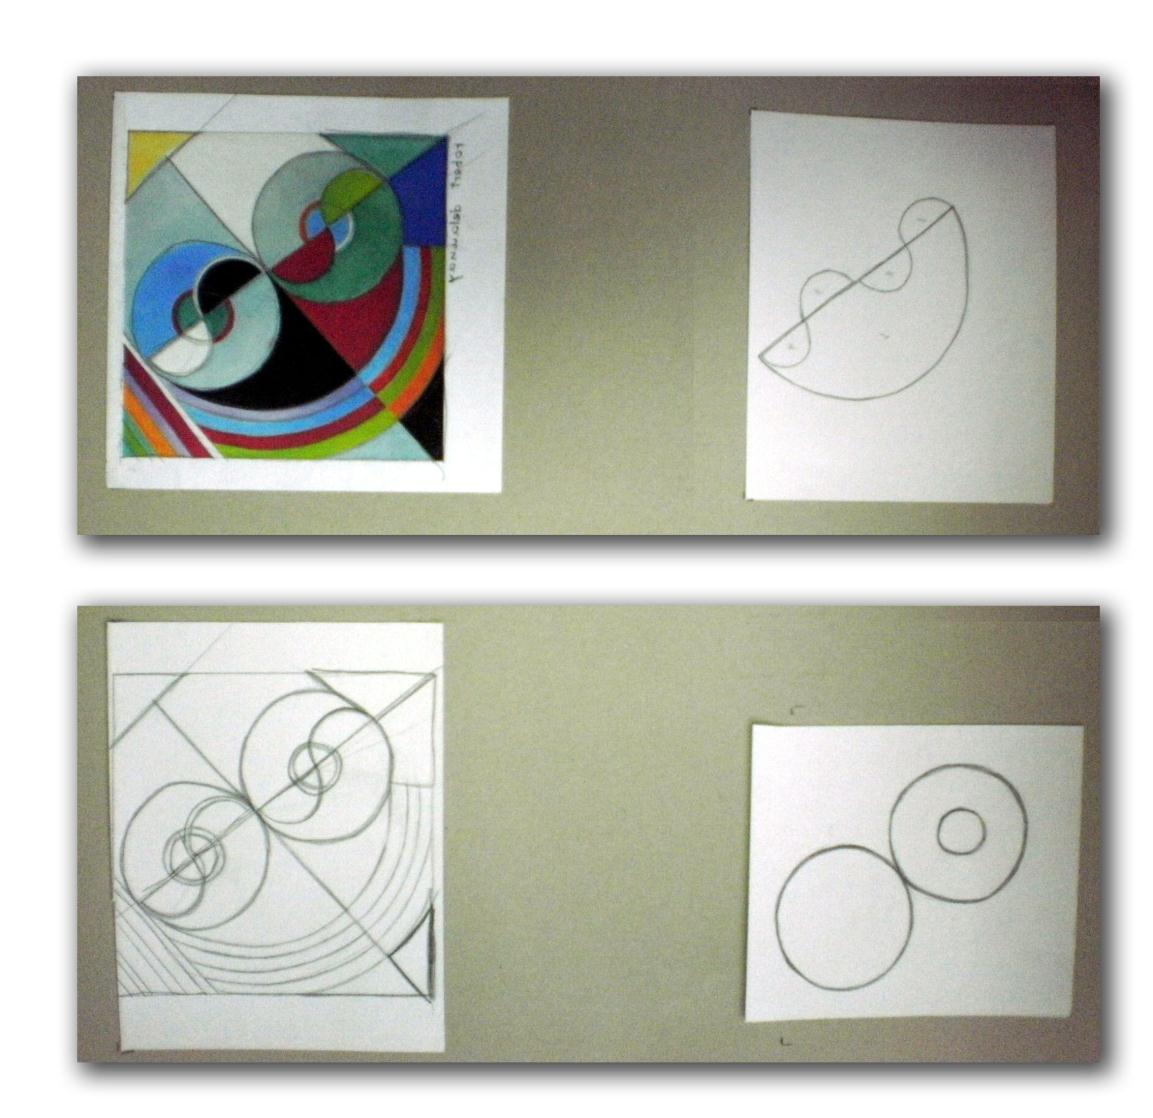 3η Τεχνική Επιλέχθηκε ένα έργο του Robert Delaunay με κύκλους.